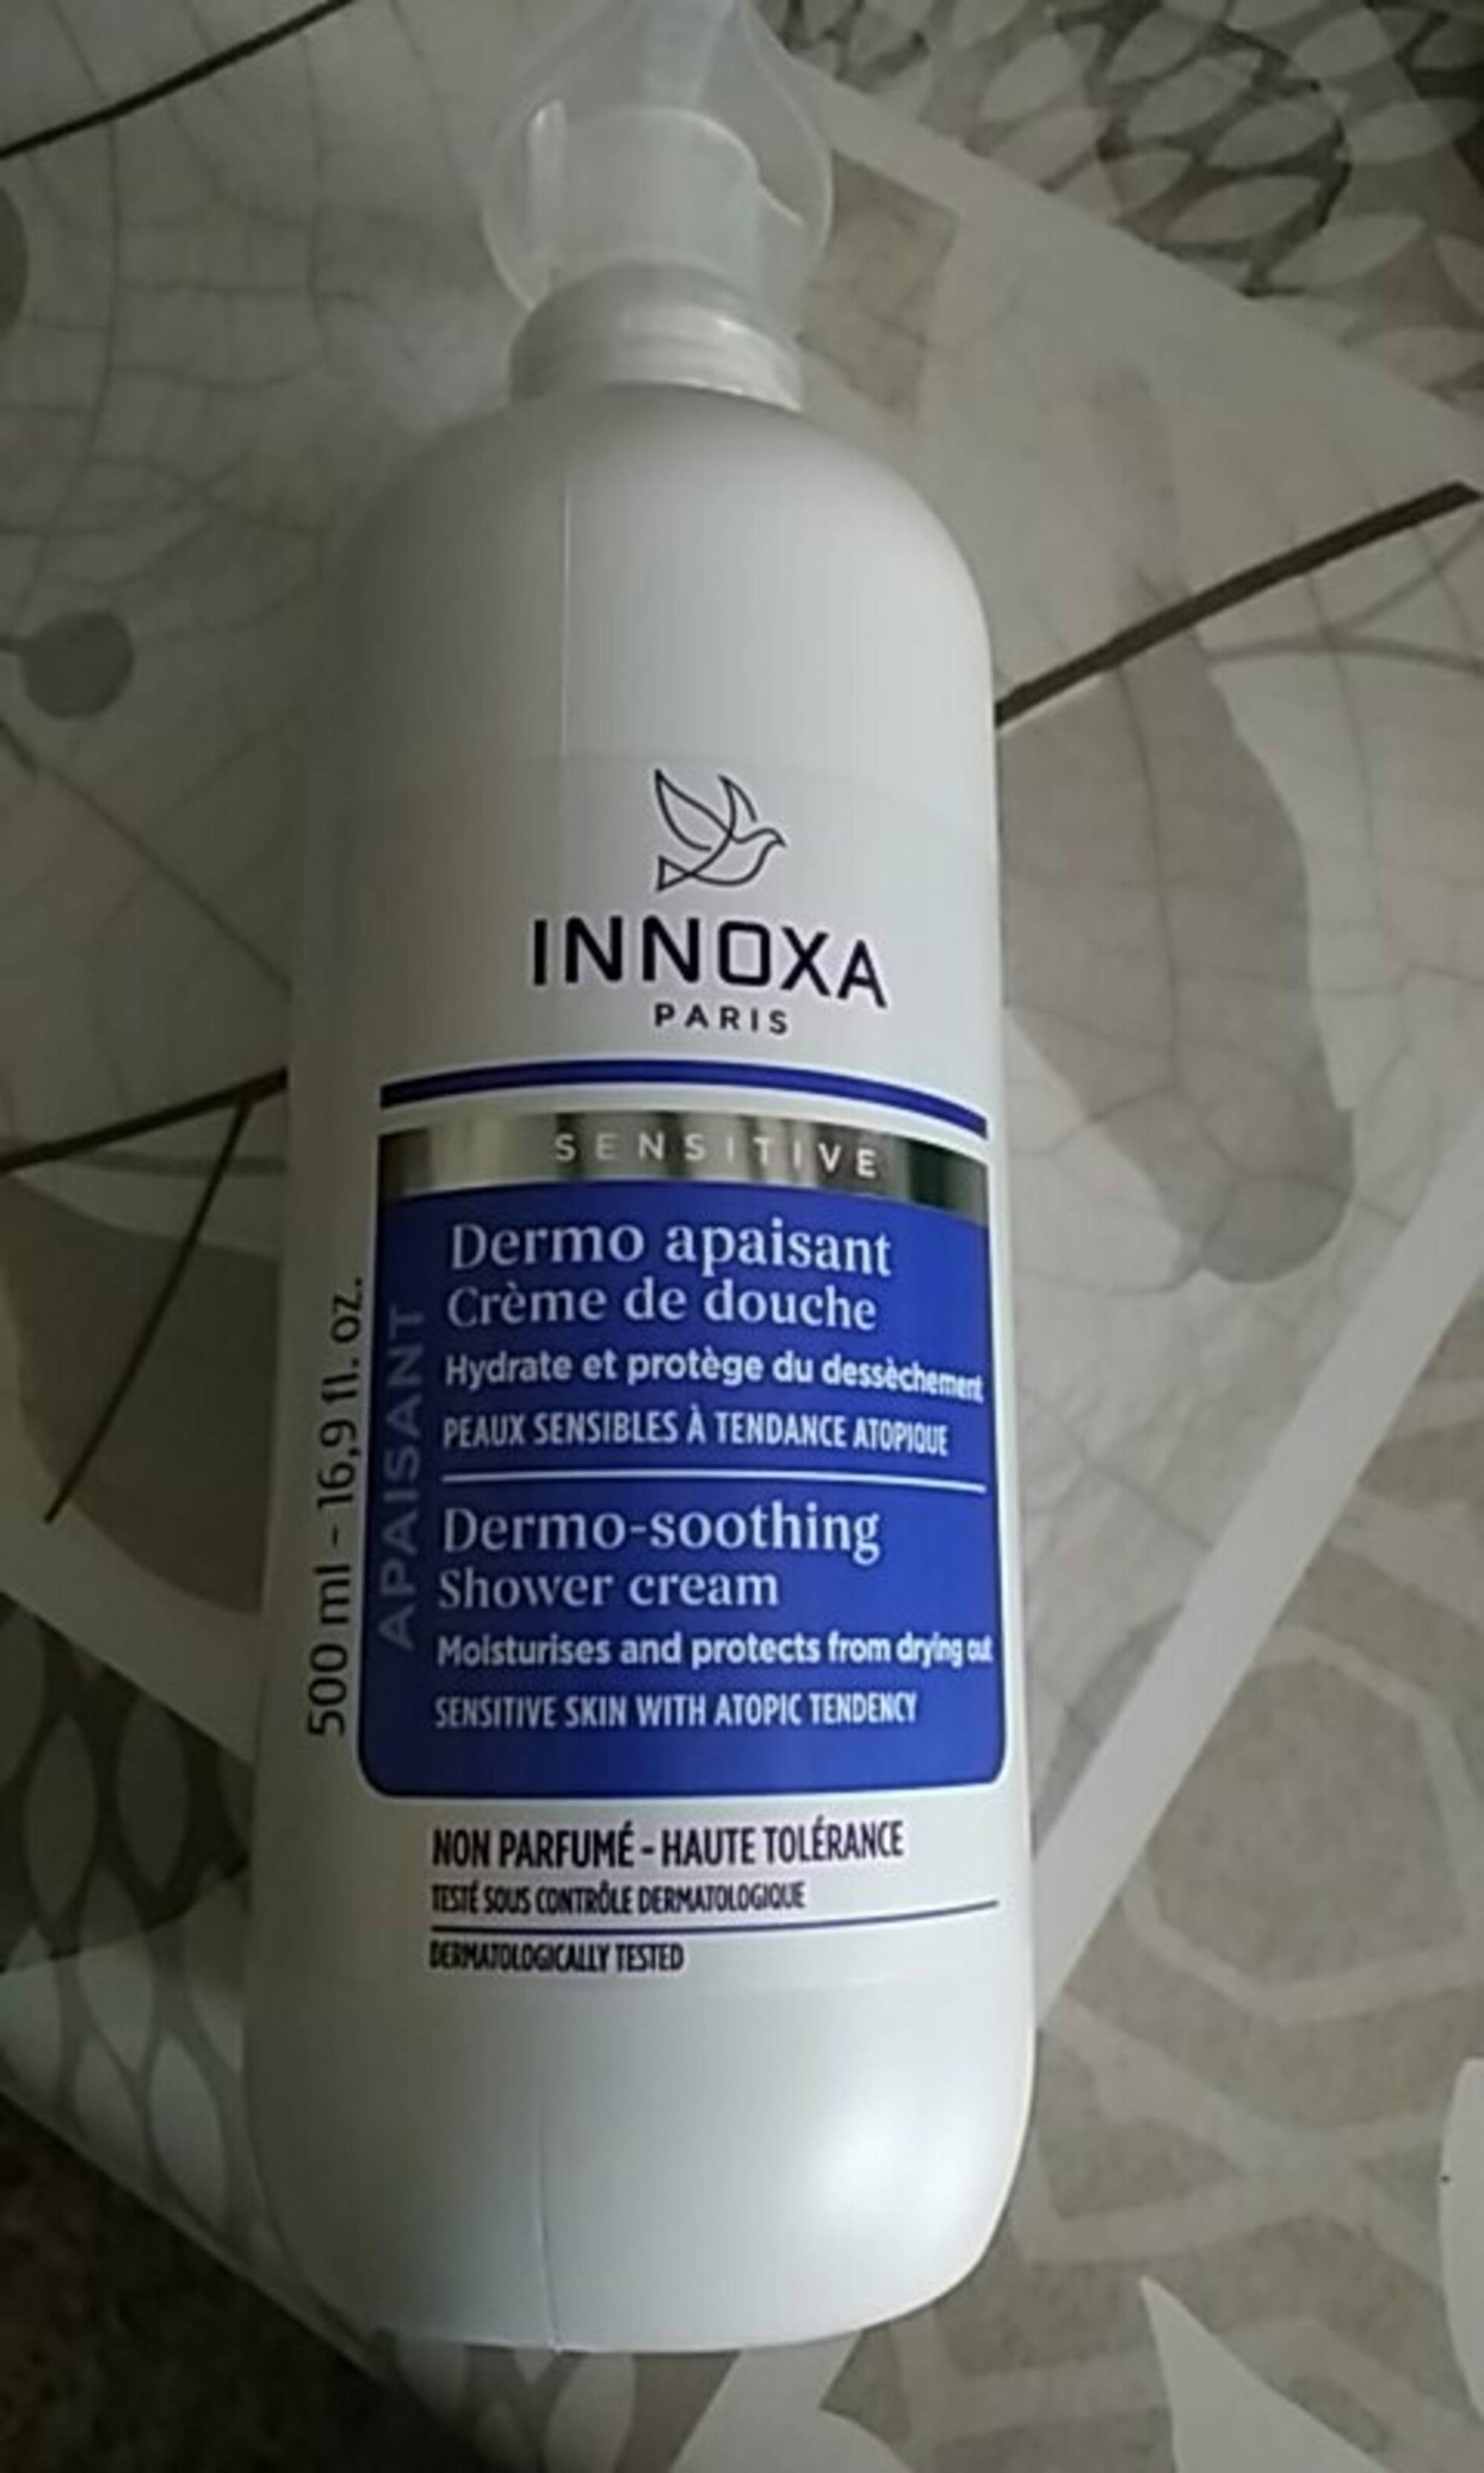 INNOXA PARIS - Sensitive dermo apaisant - Crème de douche